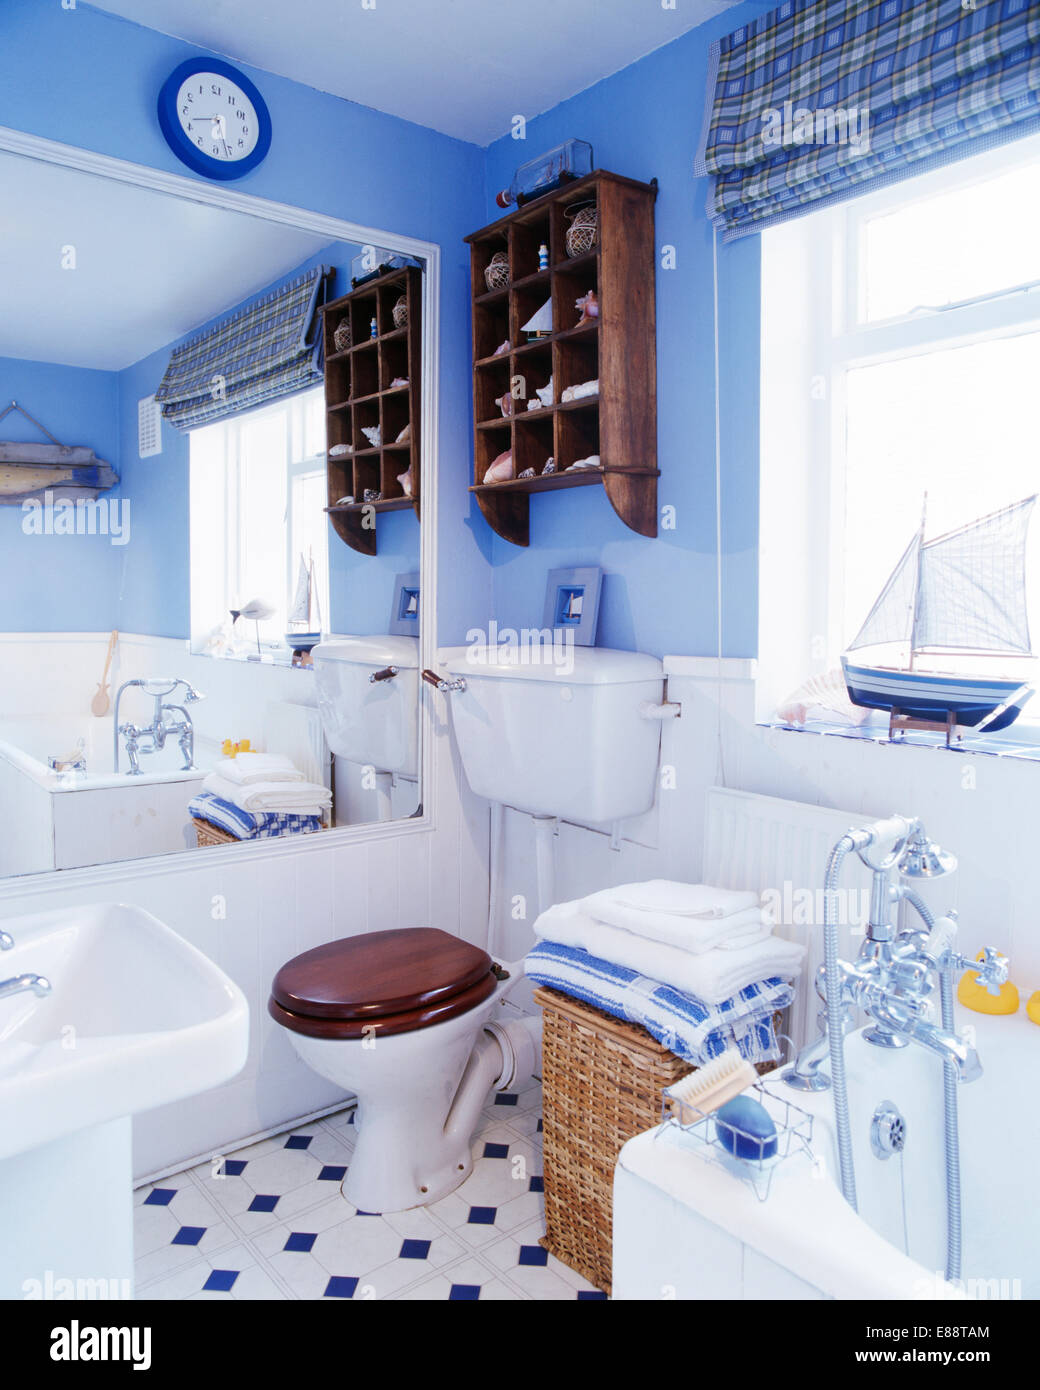 Großer Spiegel an der Wand neben der Toilette in kleinen blauen Badezimmer mit gefaltete Handtücher auf Wäsche Weidenkorb unter Fenster Stockfoto